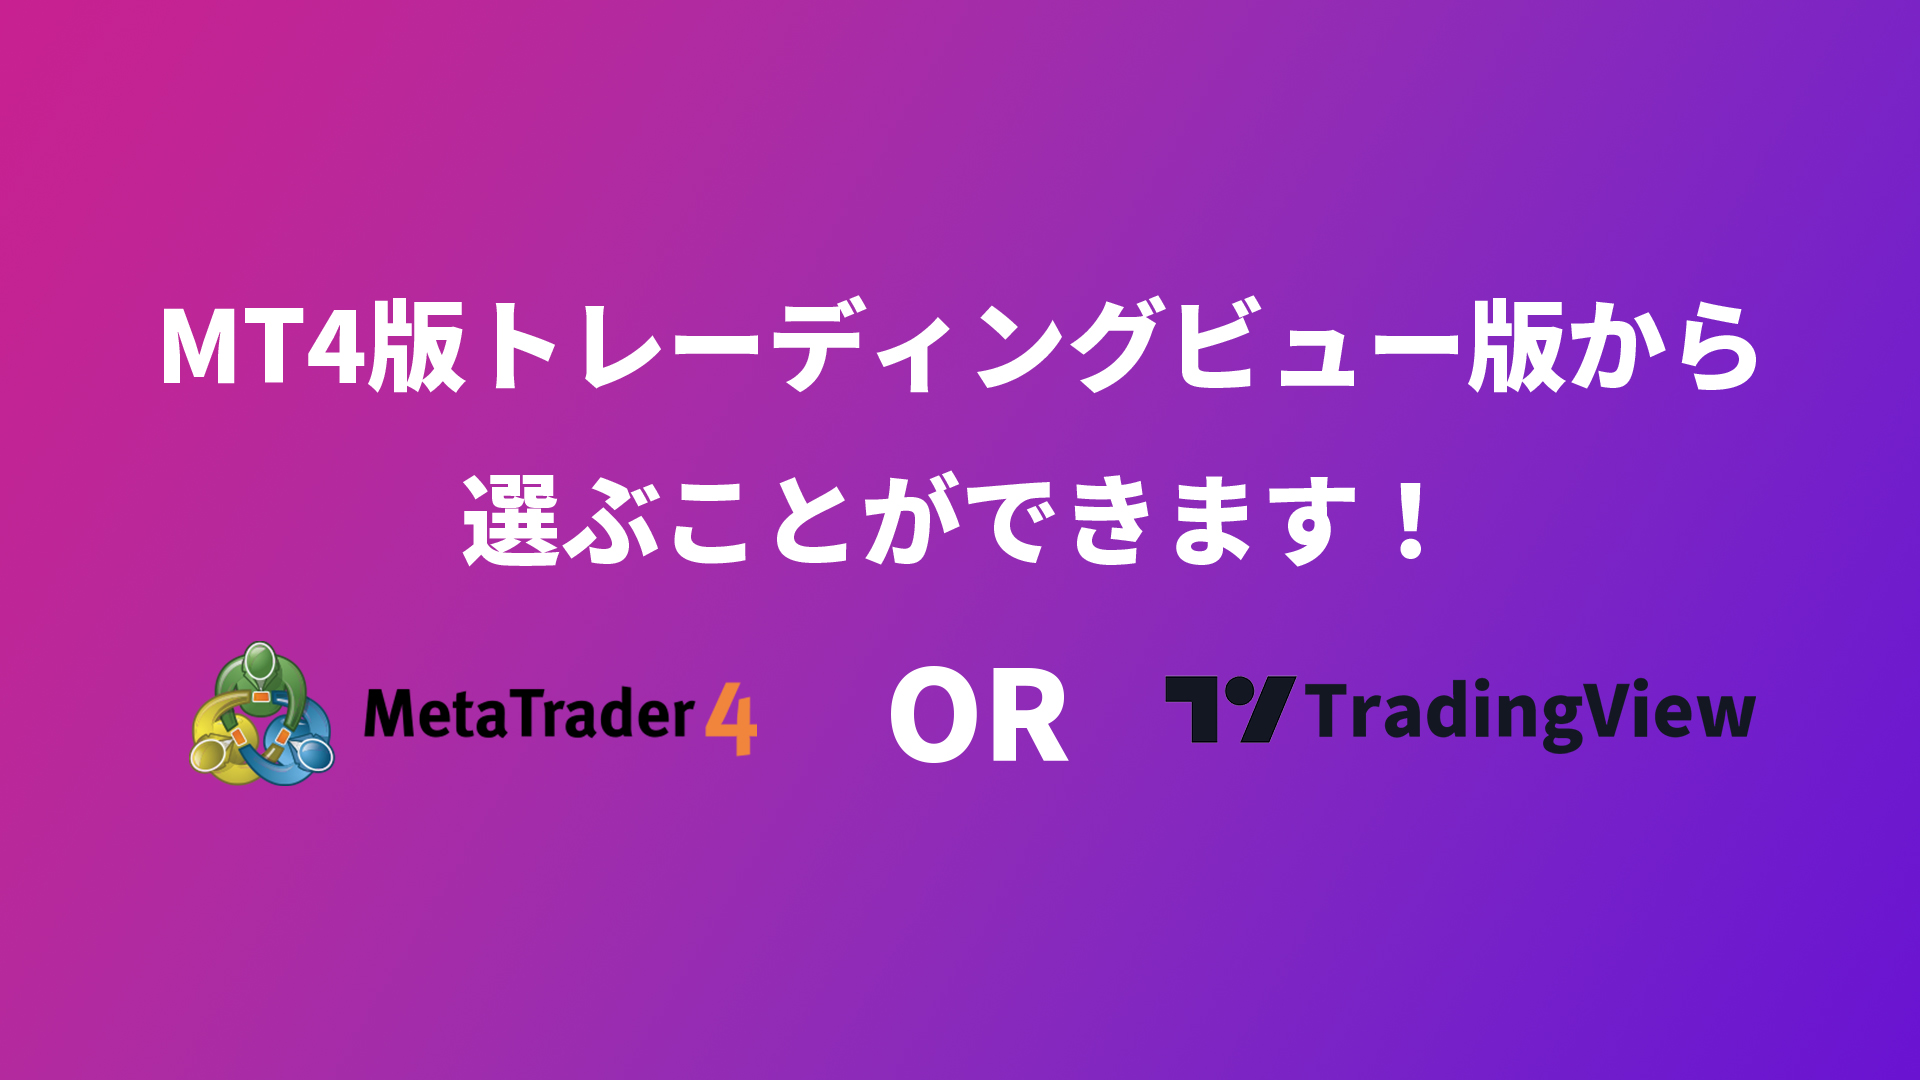 mt4-tradingview